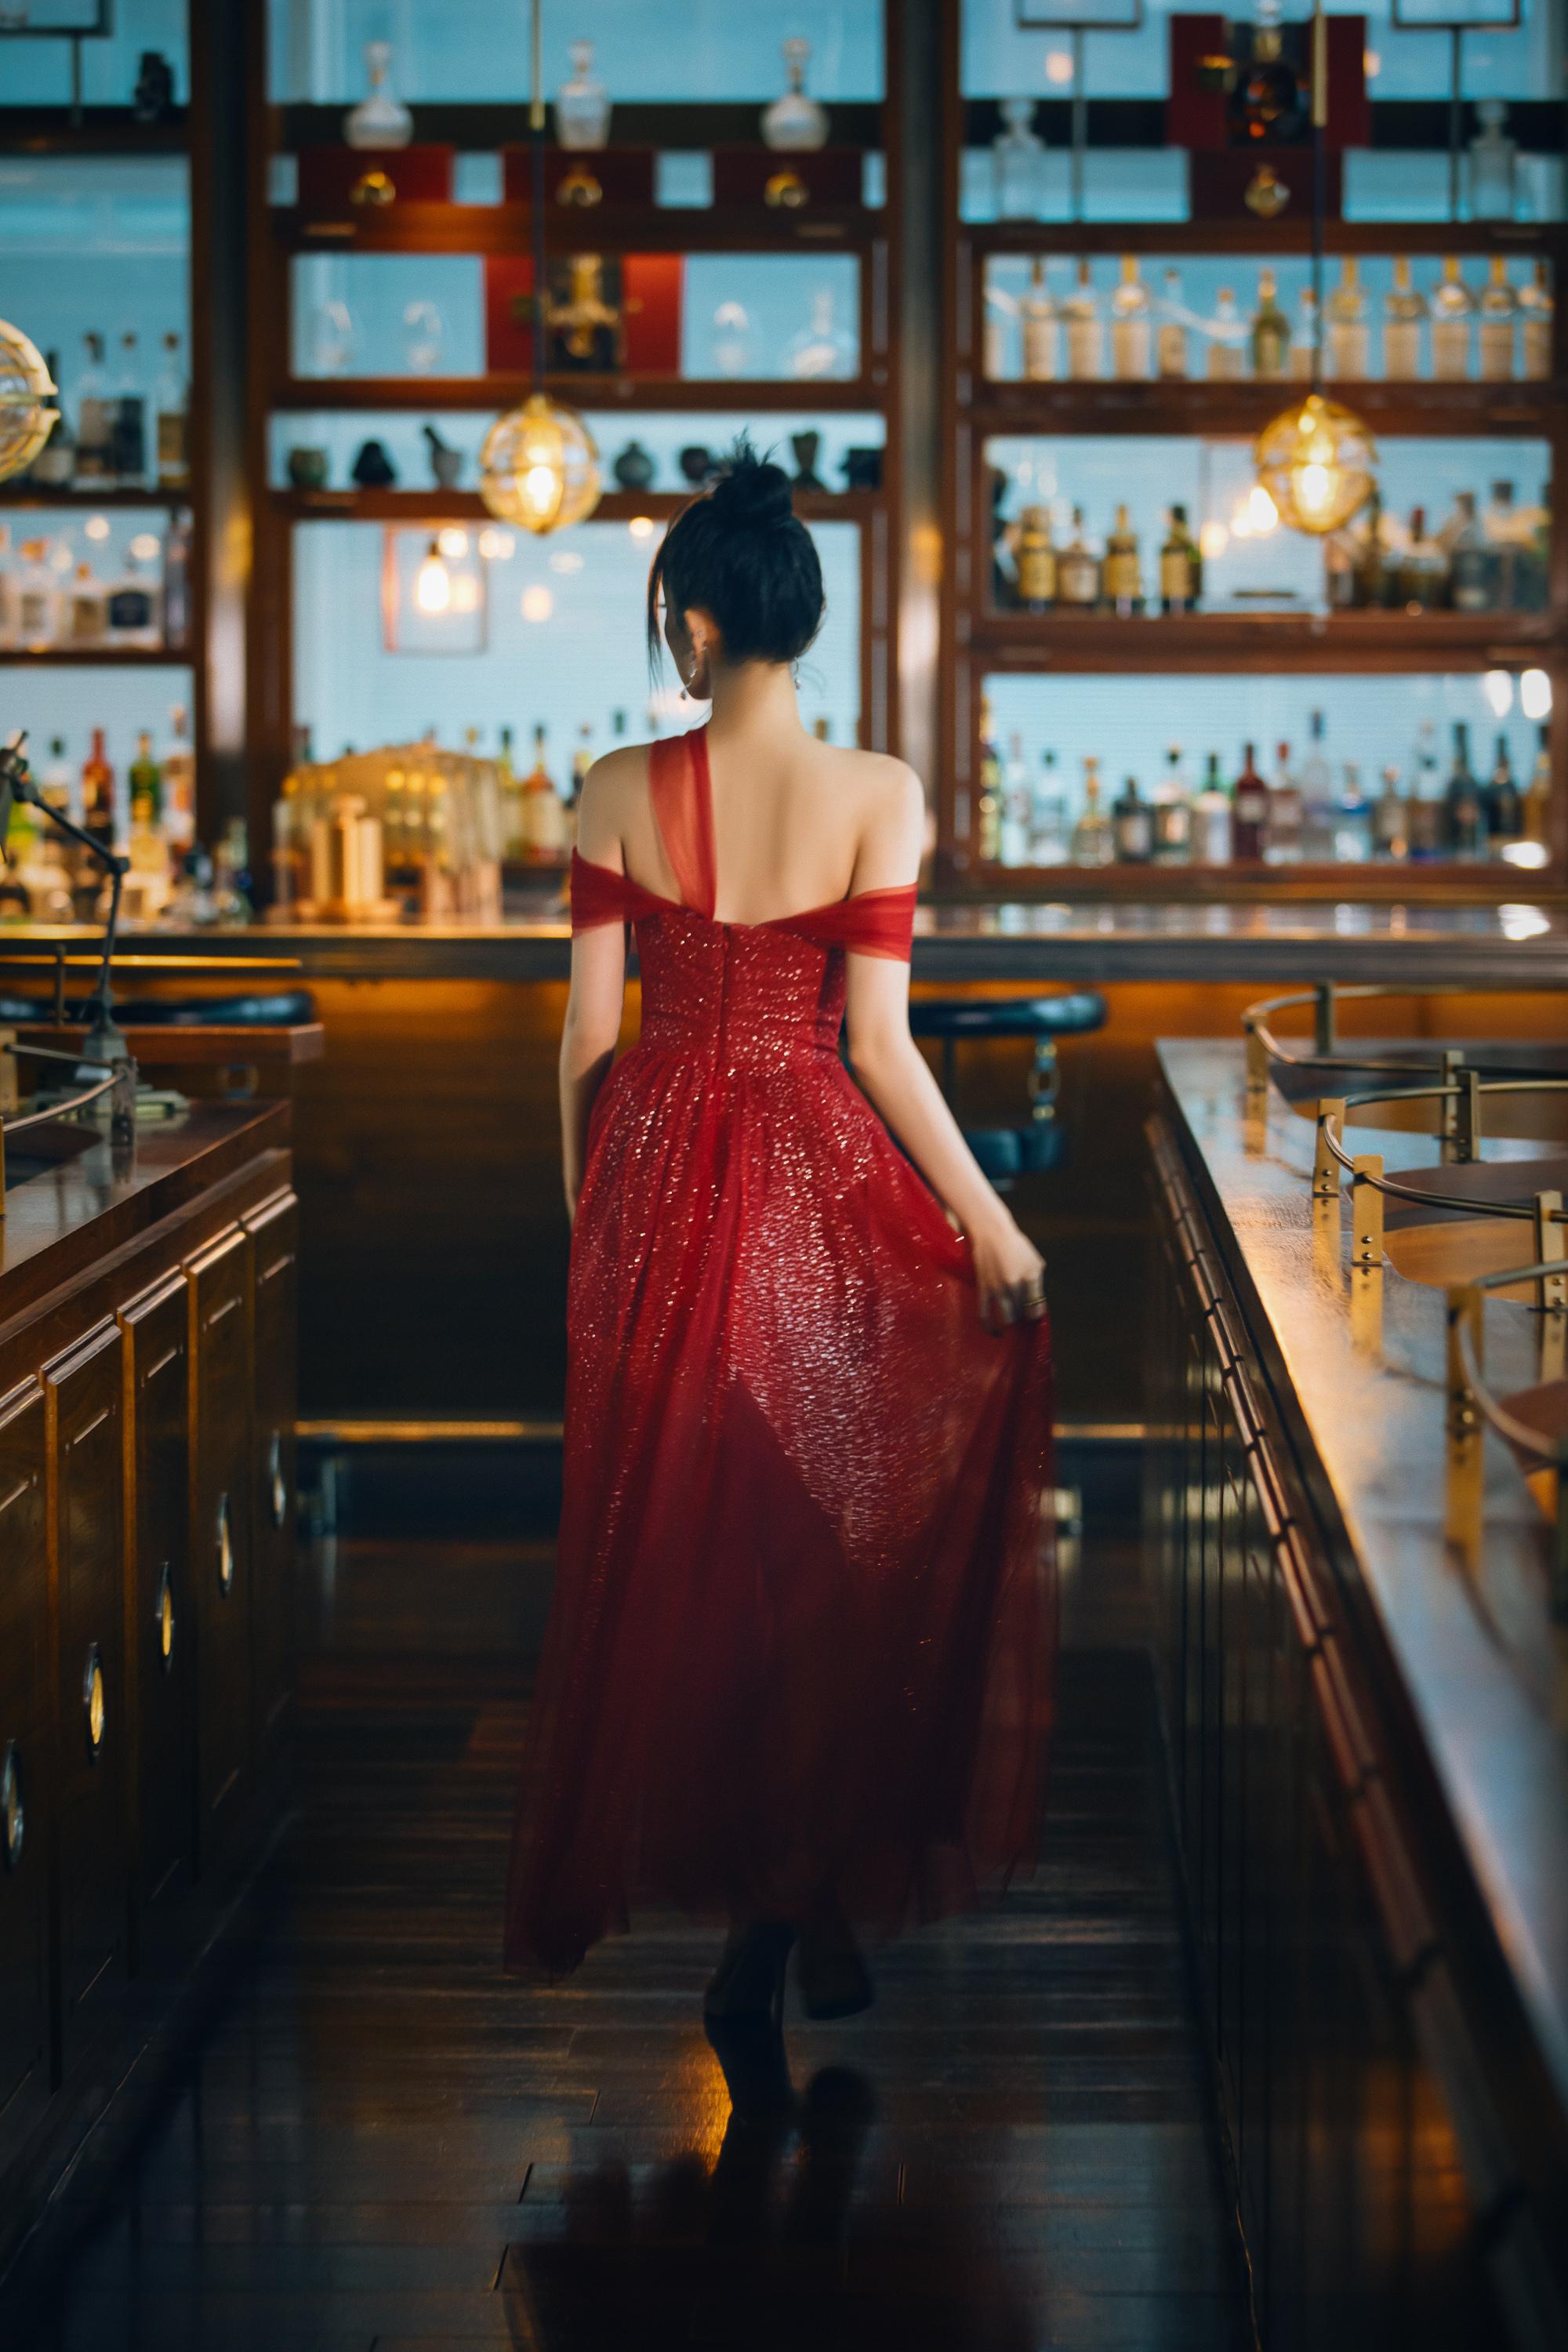 古力娜扎复古酒吧大片曝光 穿红色纱裙秀香肩雪肤又美又仙,